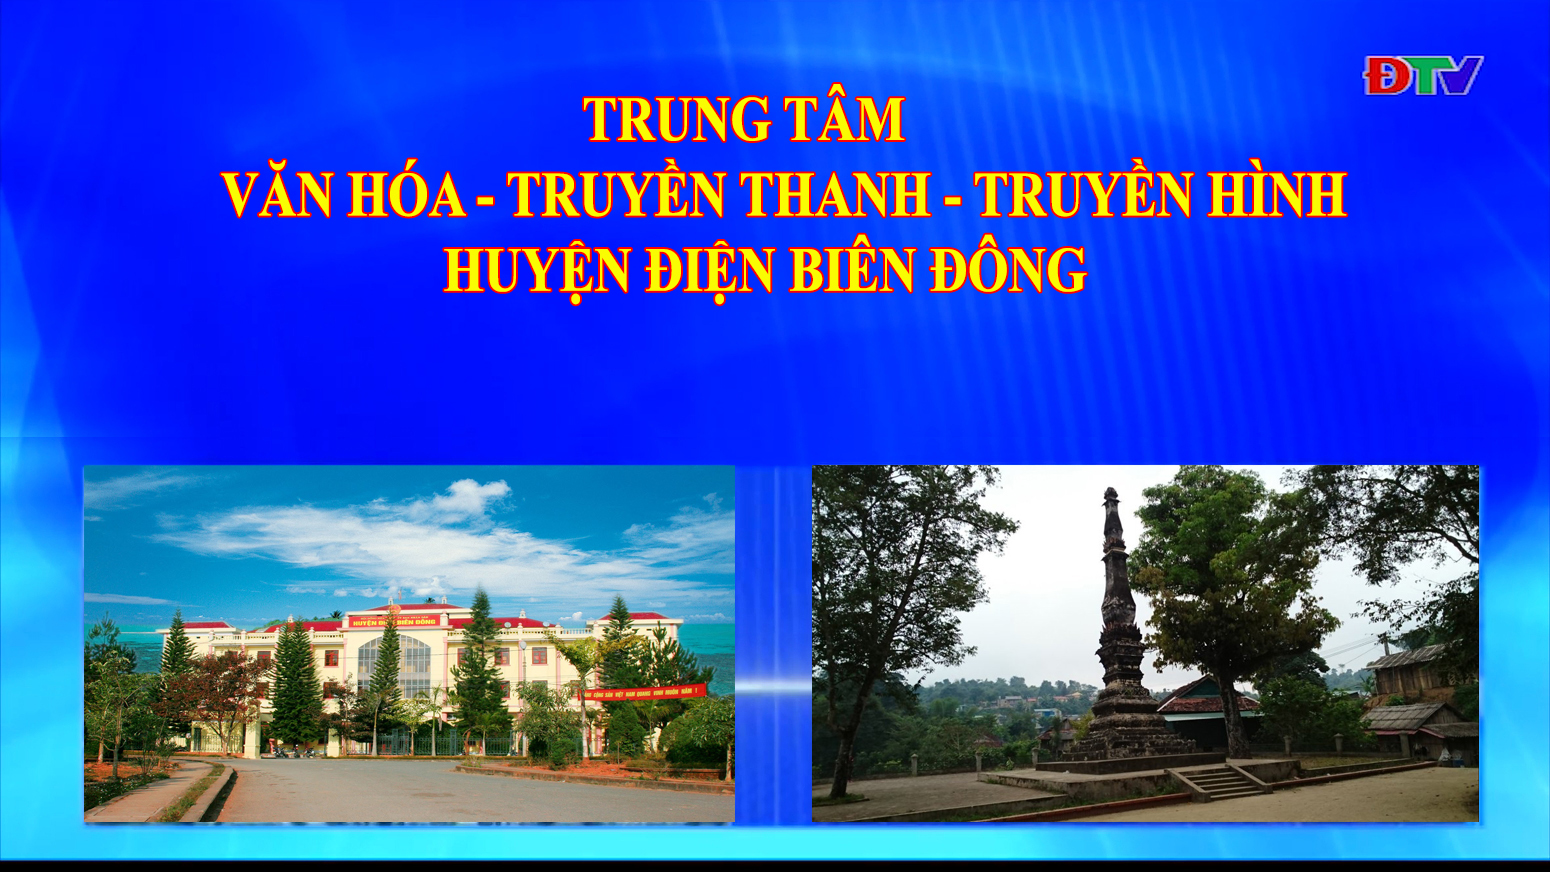 Trung tâm VH-TTTH huyện Điện Biên Đông (Ngày 20-8-2022)